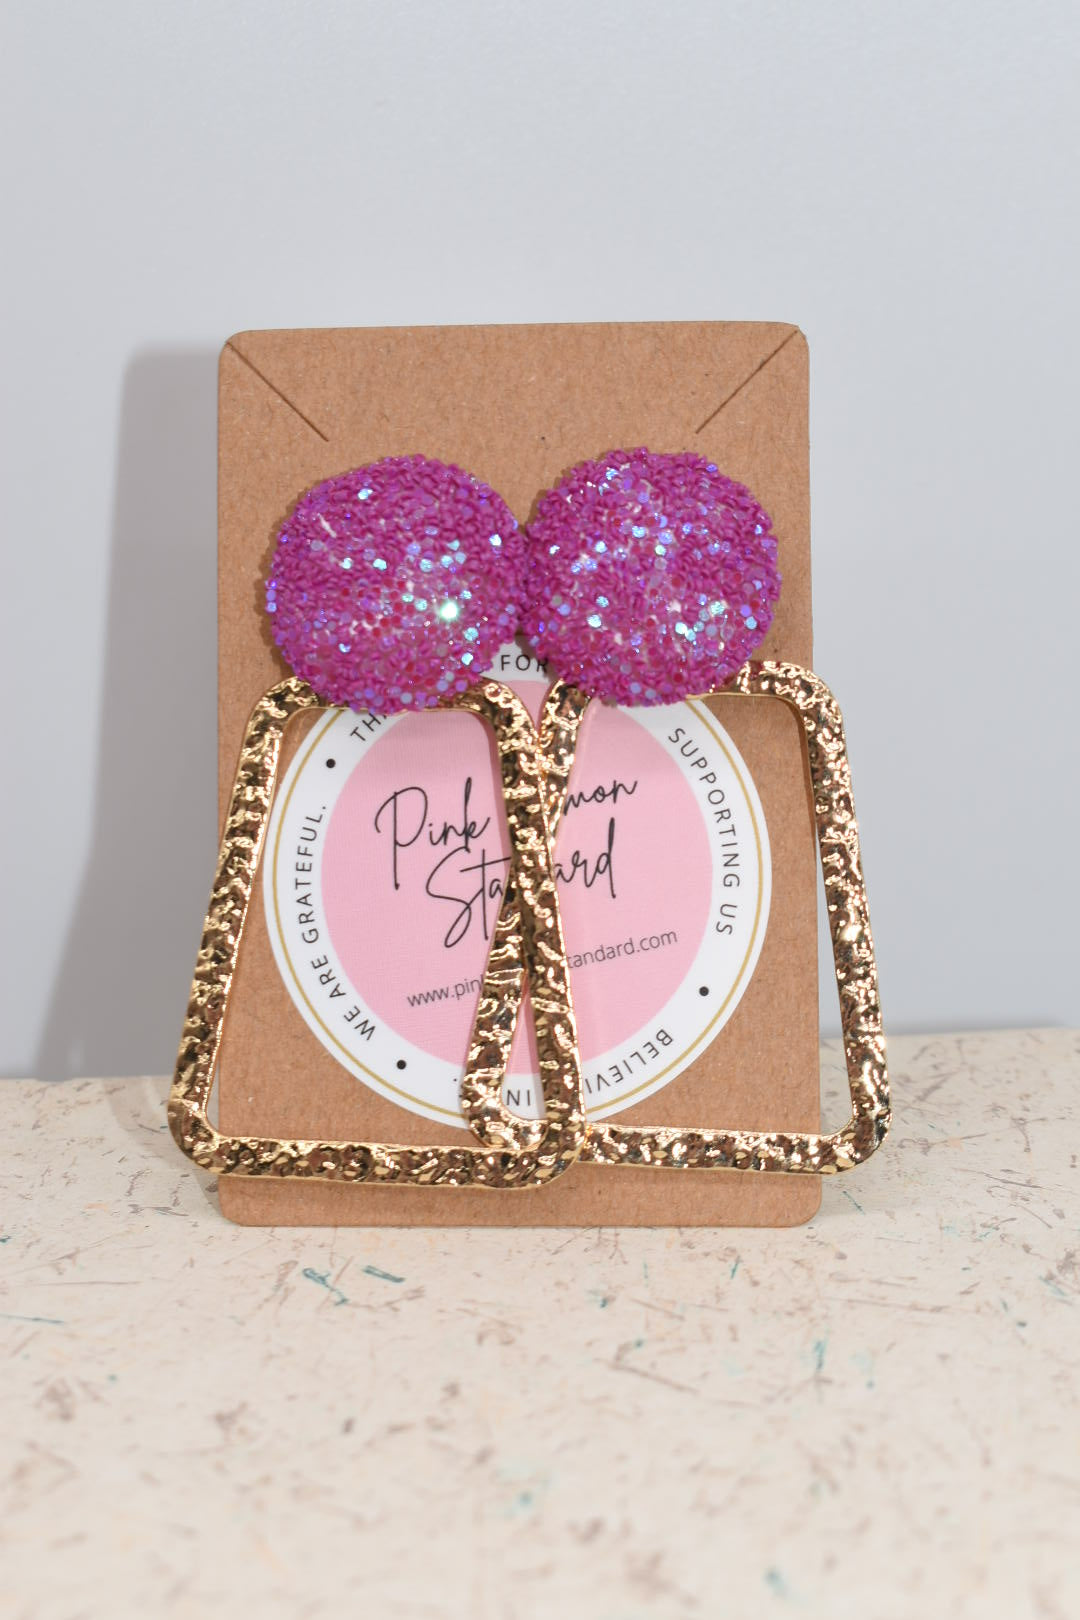 Statement Earrings: Pink Glitter & Gold Trap-ezoid Earrings